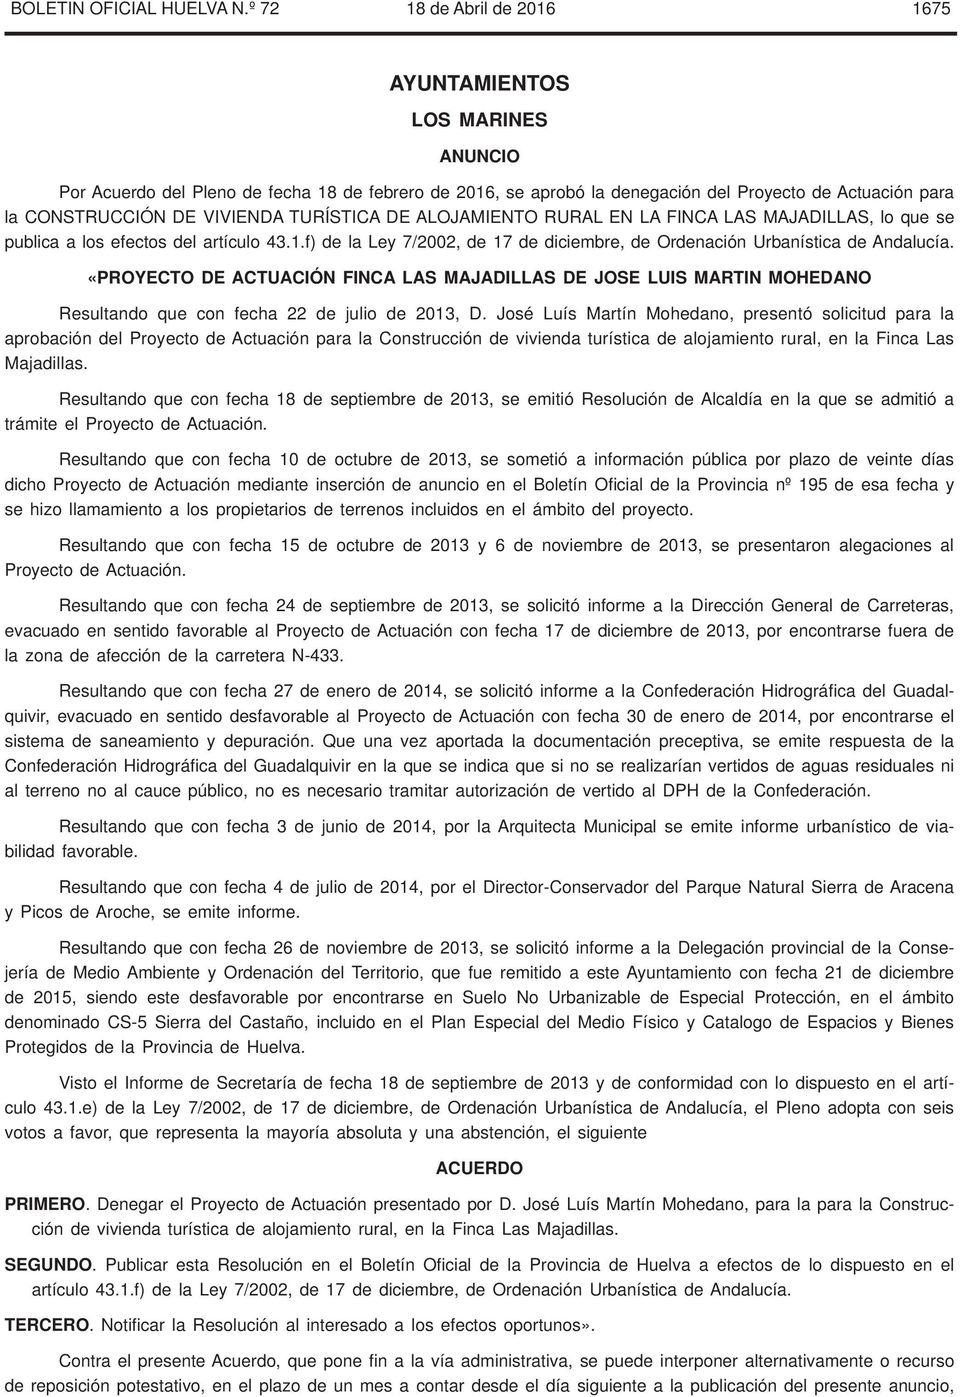 VIVIENDA TURÍSTICA DE ALOJAMIENTO RURAL EN LA FINCA LAS MAJADILLAS, lo que se publica a los efectos del artículo 43.1.f) de la Ley 7/2002, de 17 de diciembre, de Ordenación Urbanística de Andalucía.